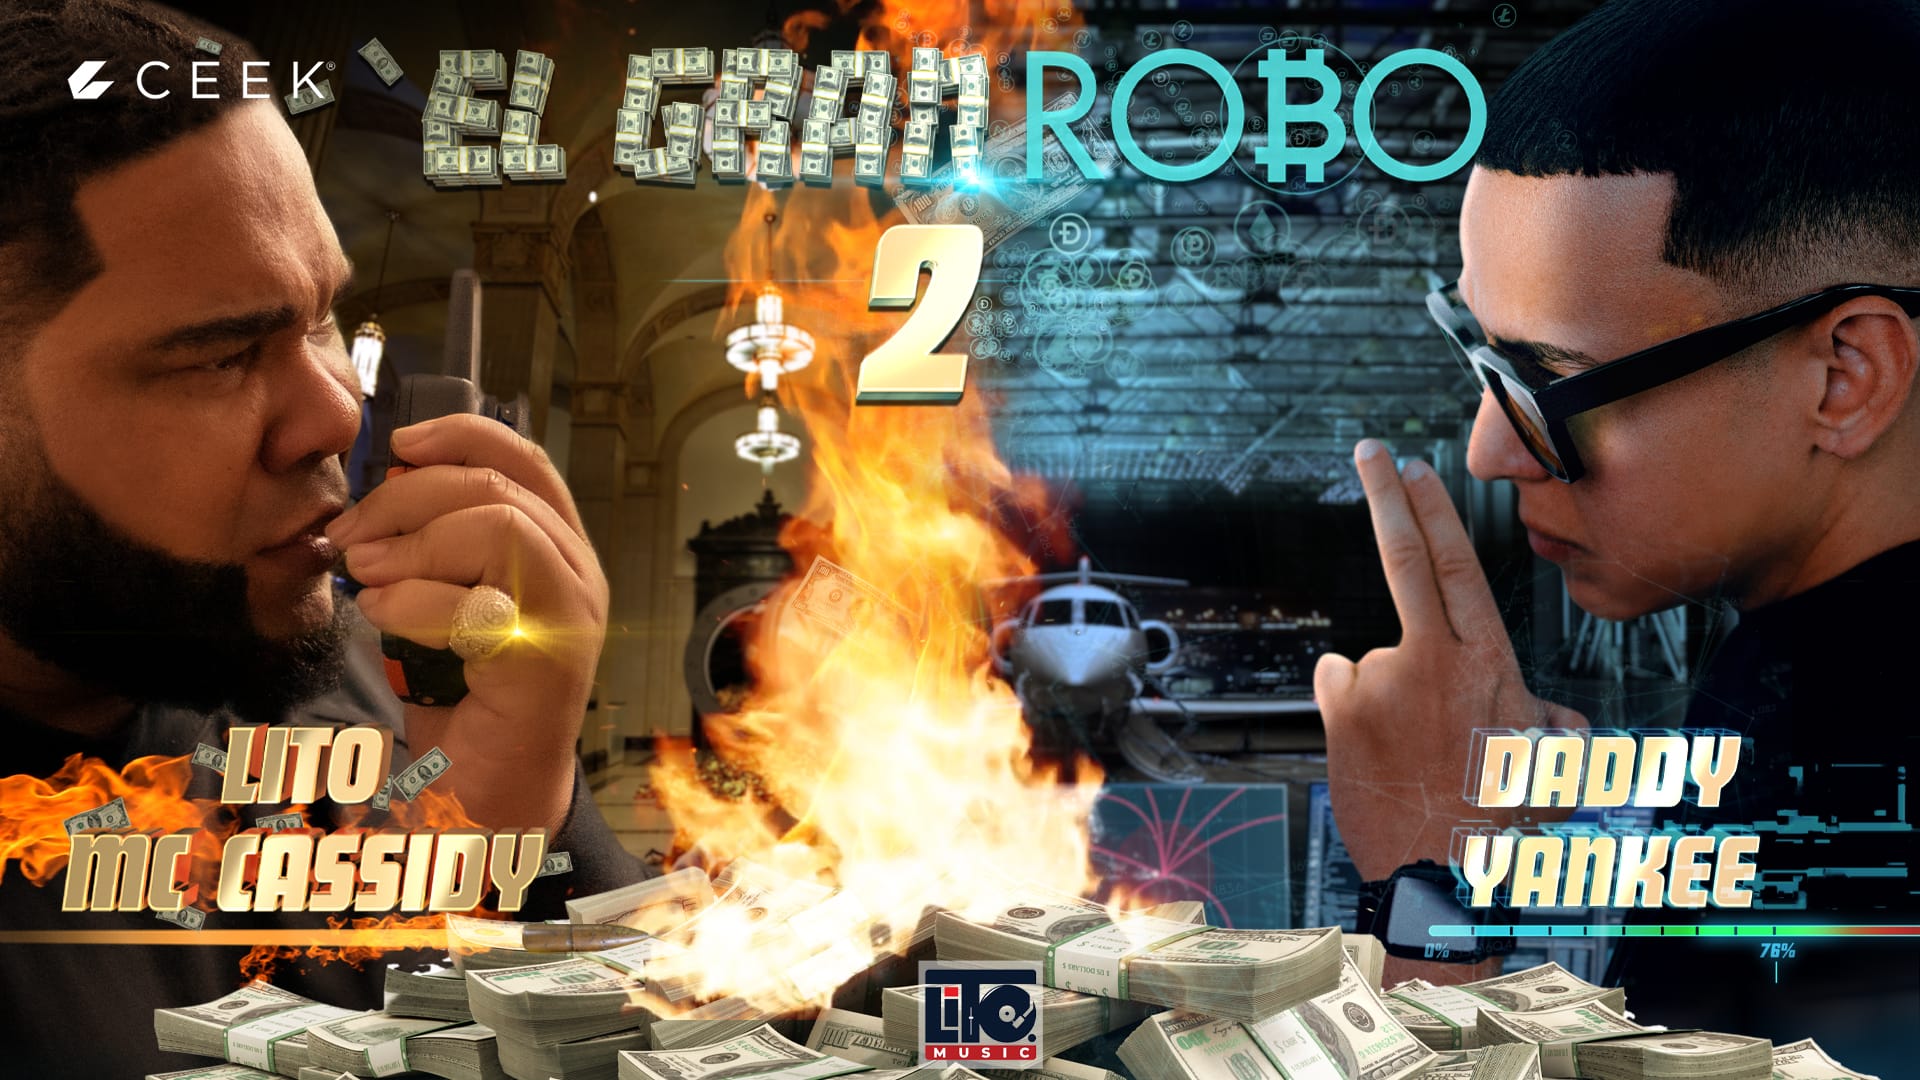 Daddy Yankee x Lito MC Cassidy - El Gran Robo 2 ceek.com